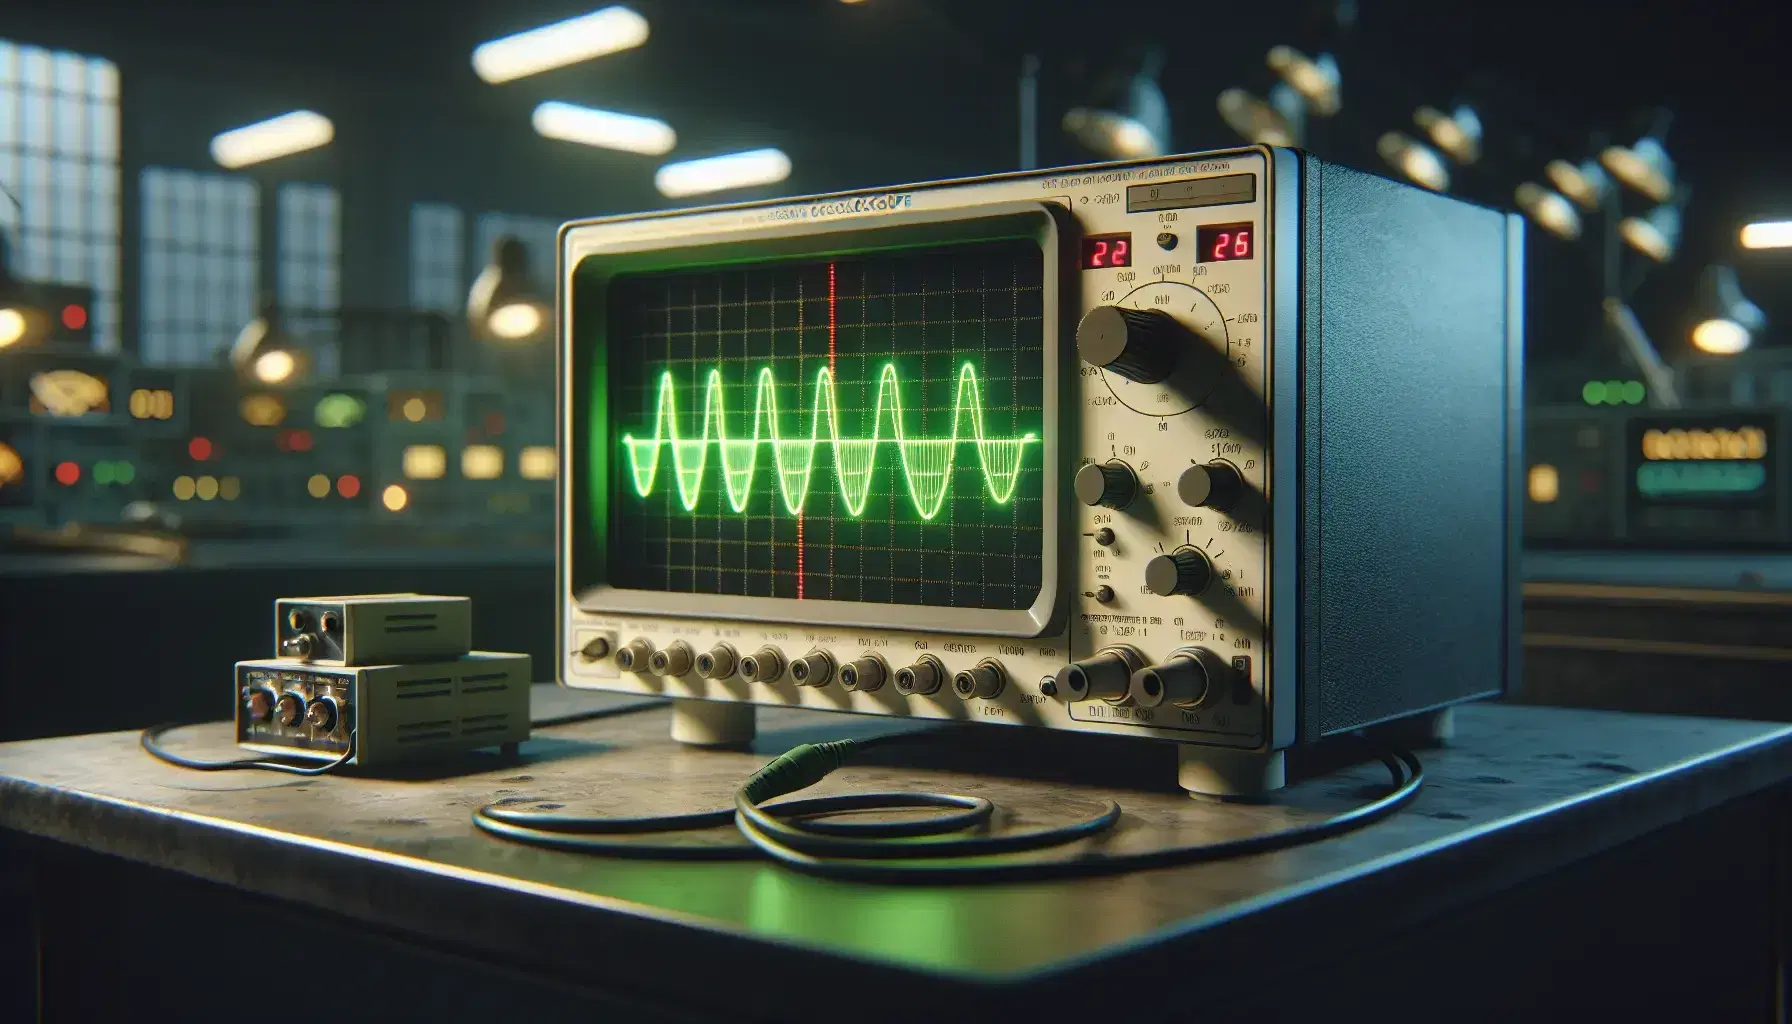 Oscilloscopio moderno visualizza curva sinusoidale verde su schermo, collegato a generatore di segnali in laboratorio di elettronica.